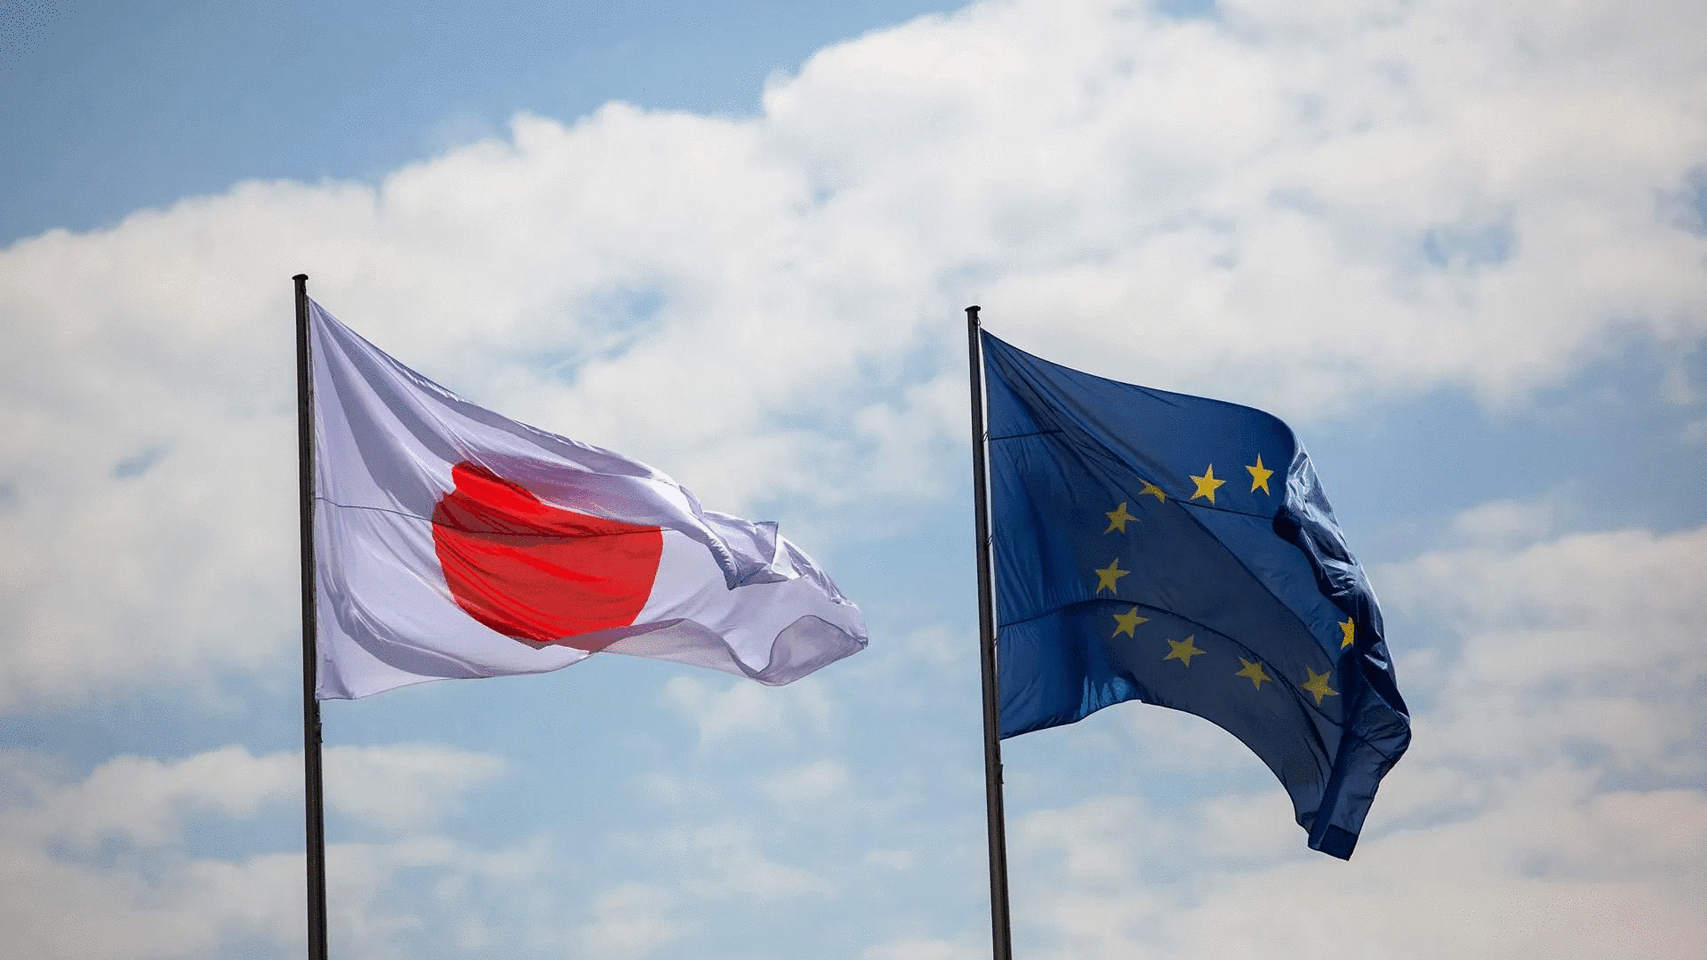 ԵՄ-ն և Ճապոնիան դեմ են Ռուսաստան ապրանքների արտահանման ամբողջական արգելքի վերաբերյալ ԱՄՆ առաջարկին. FT